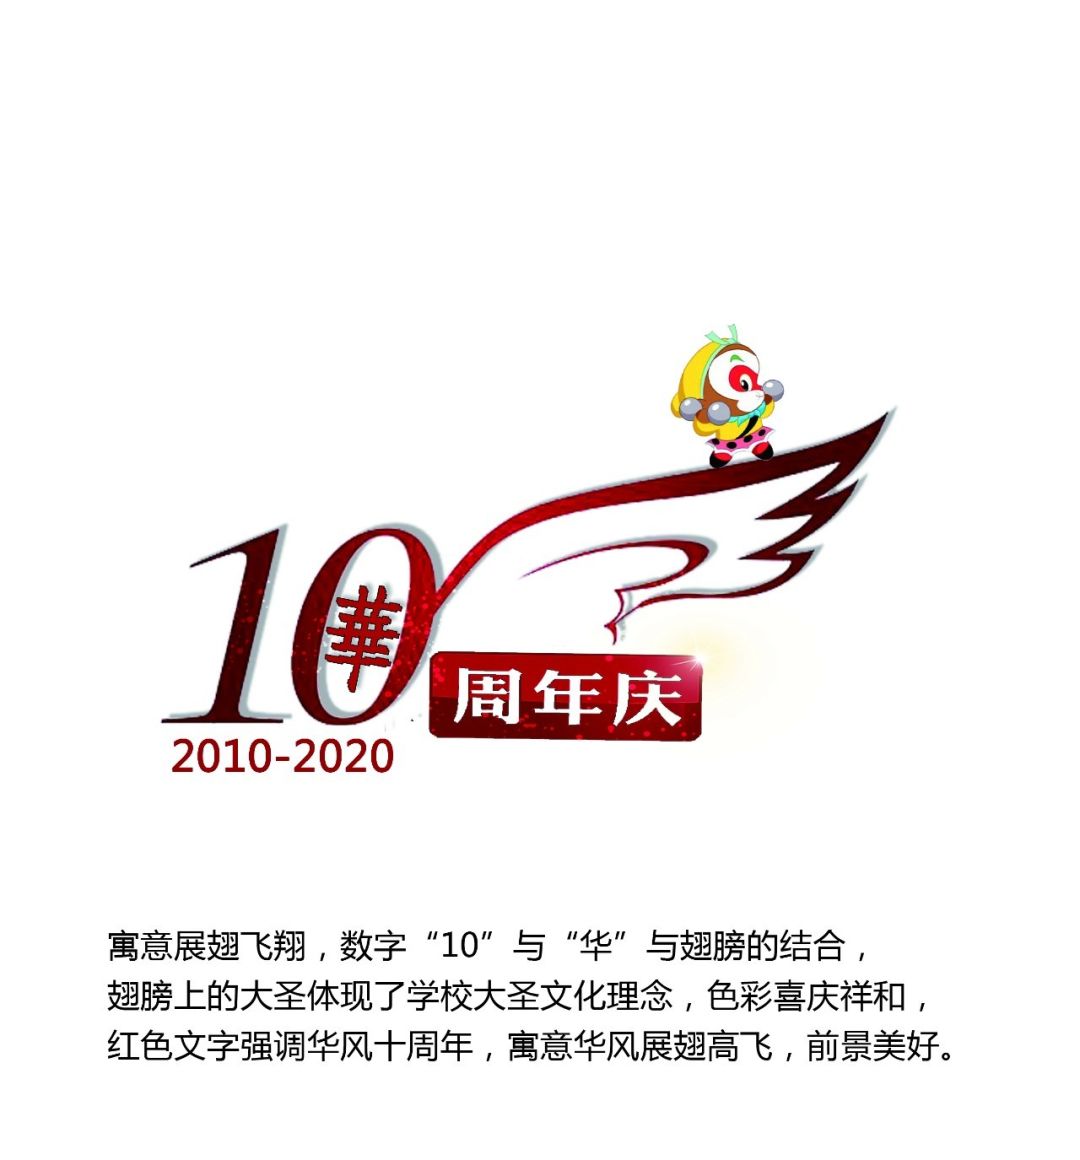 华风技校10周年校庆logo征集网络投票开始啦